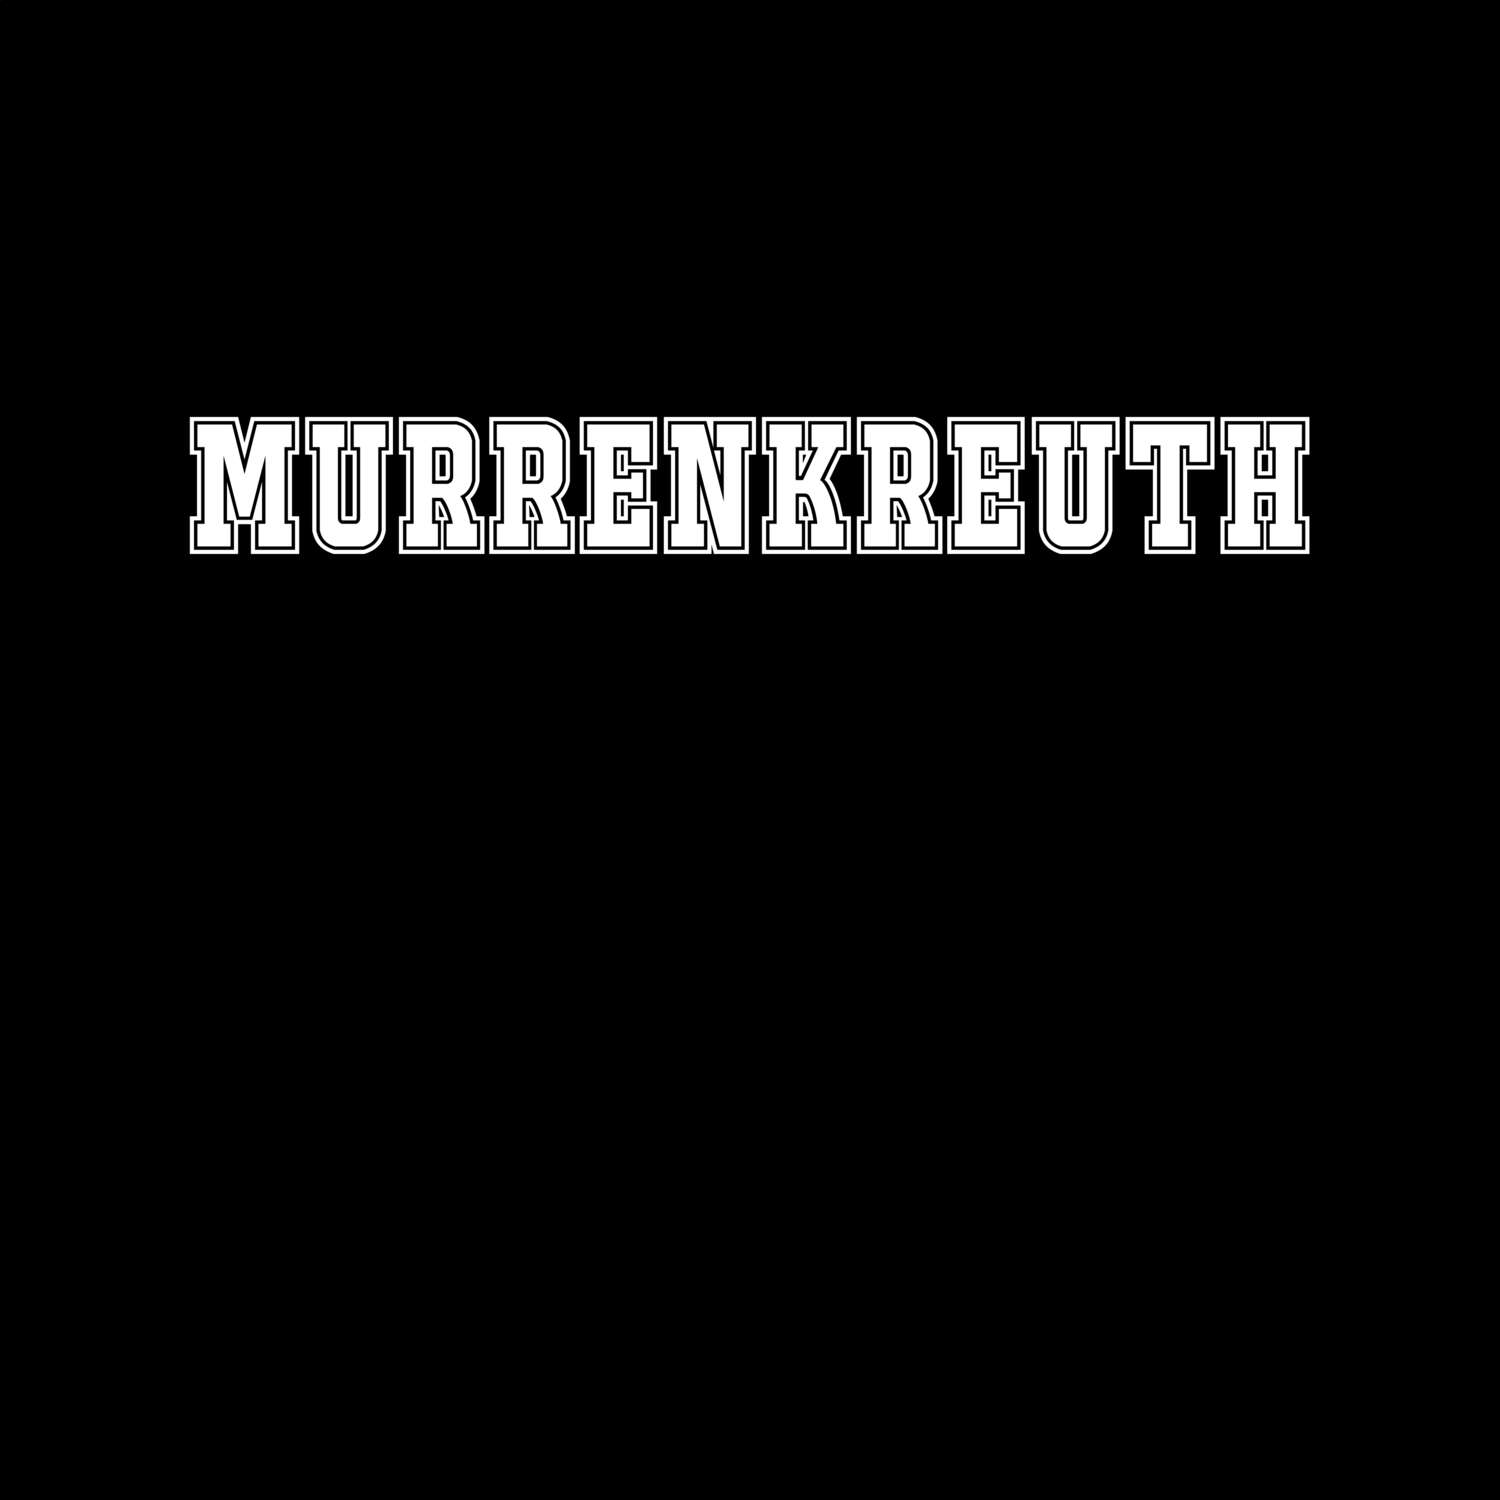 Murrenkreuth T-Shirt »Classic«